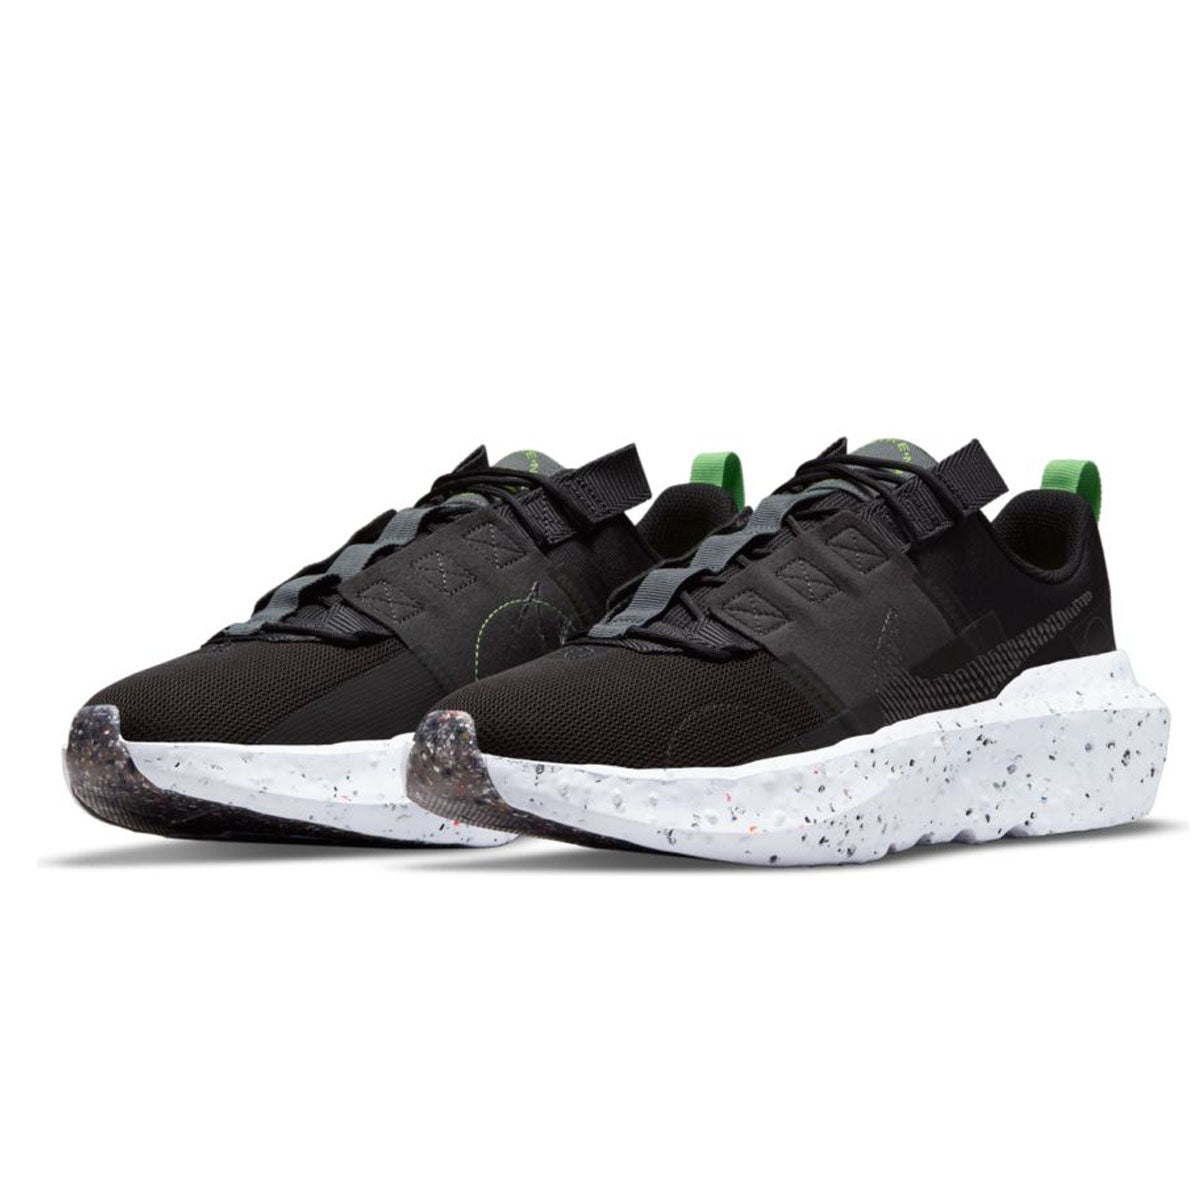 Nike Crater Impact Black/Iron Grey-Off Noir-Dark Smoke Grey